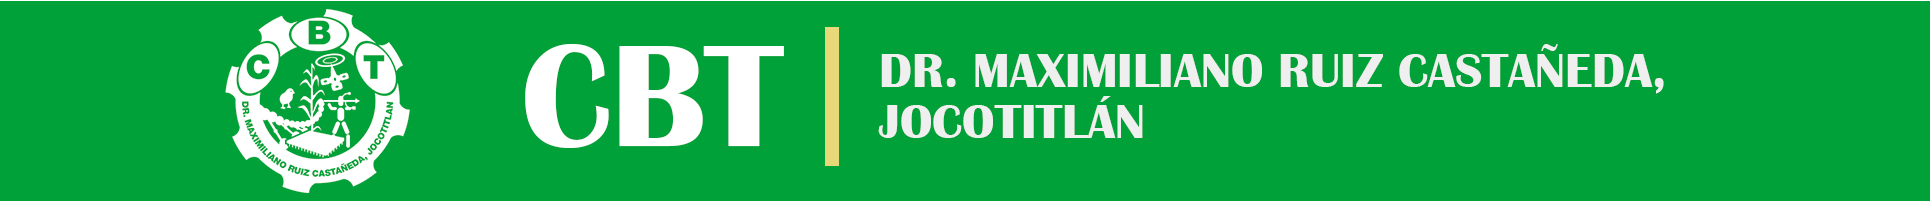 CBT Dr. Maximiliano Ruiz Castañeda, Jocotitlán